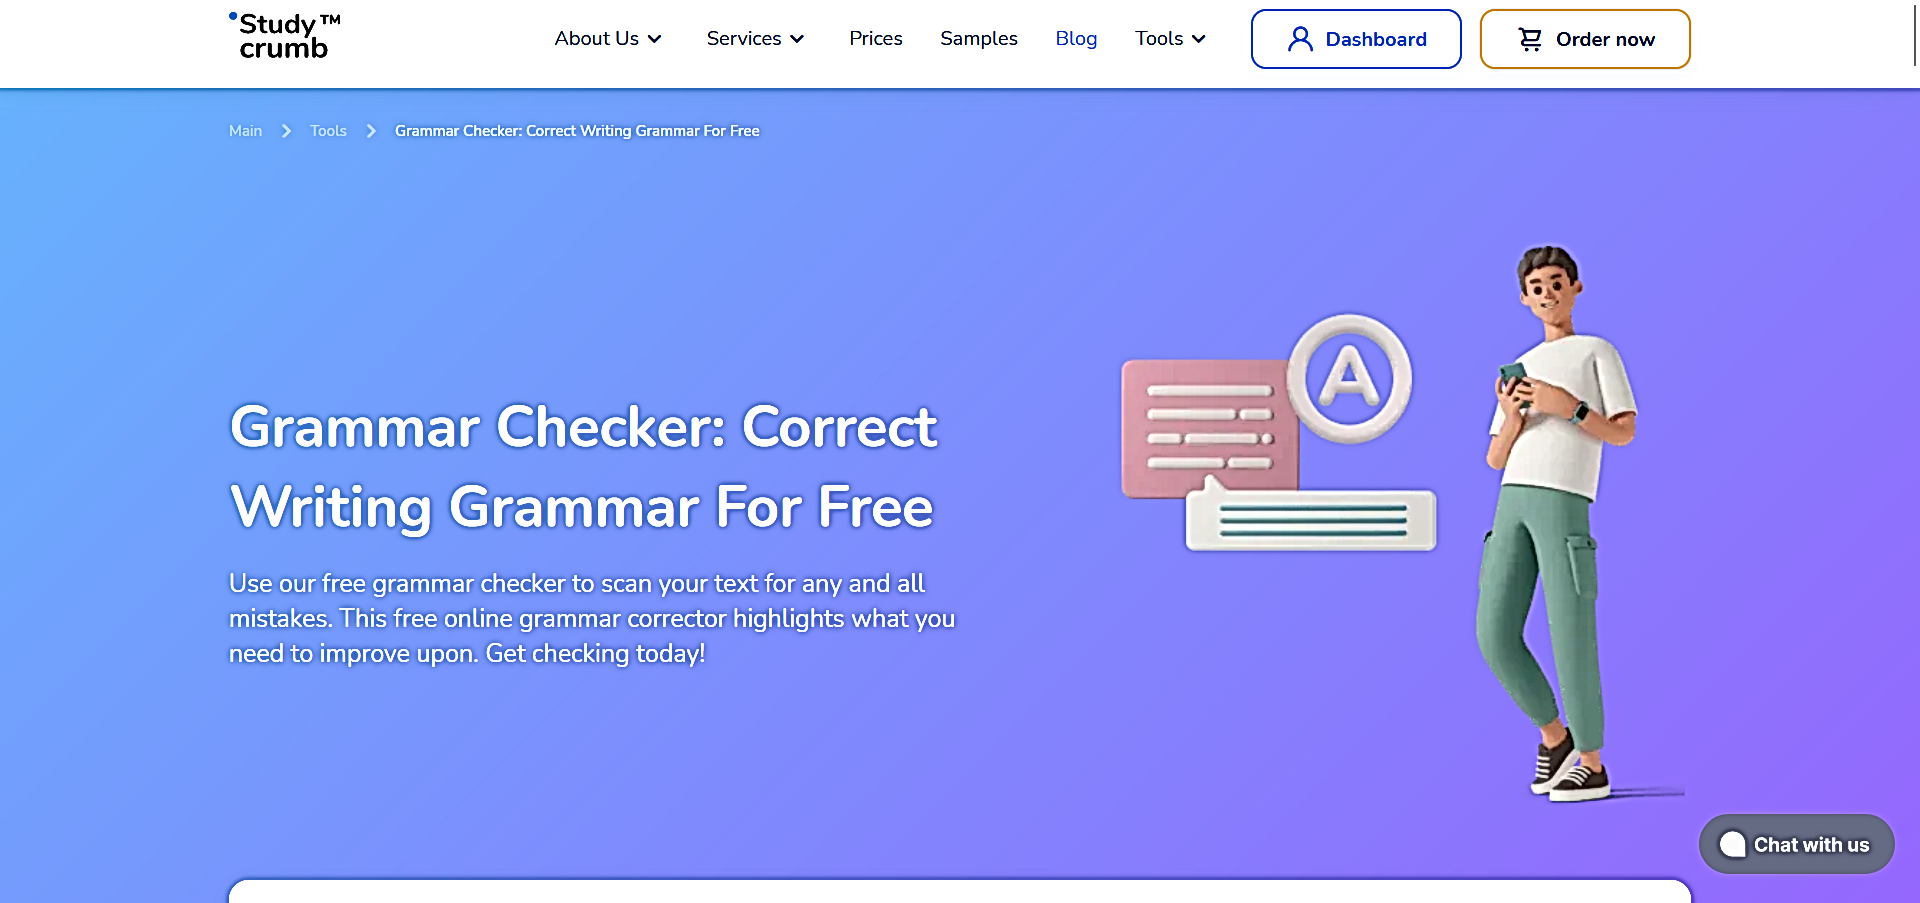 Grammar Checker featured